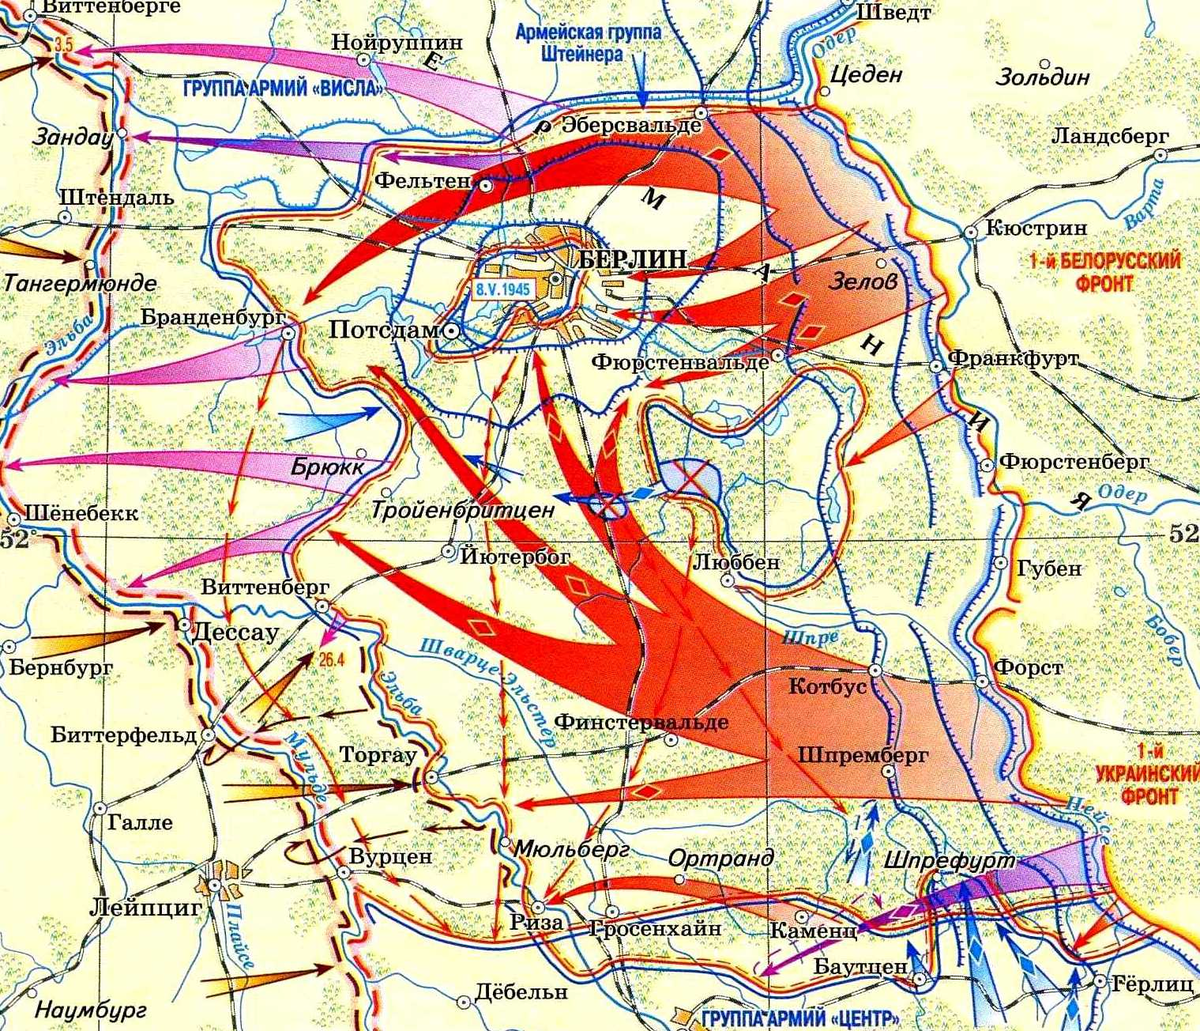 Берлинская операция апрель май 1945